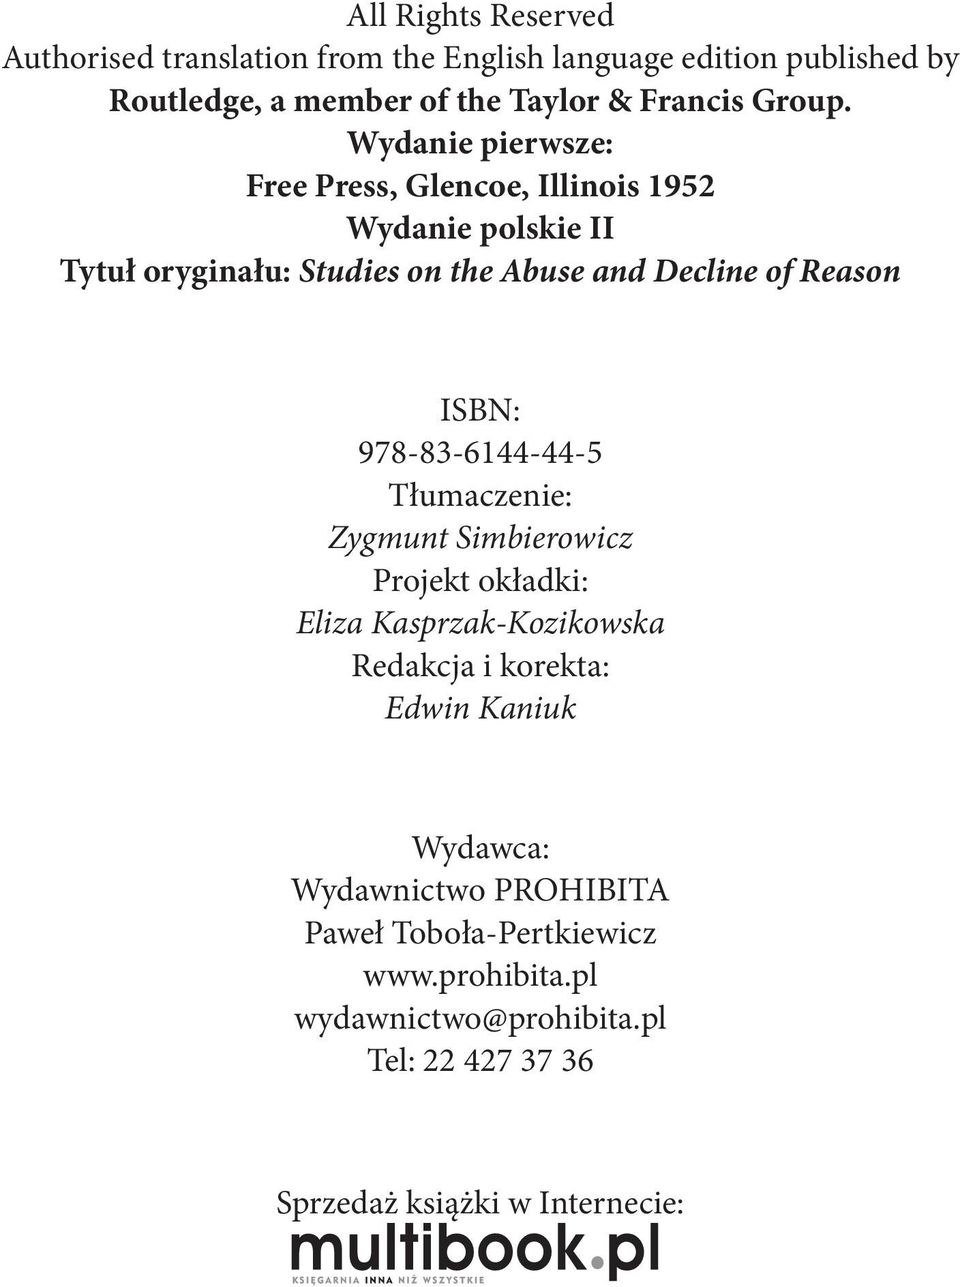 Wydanie pierwsze: Free Press, Glencoe, Illinois 1952 Wydanie polskie II Tytuł oryginału: Studies on the Abuse and Decline of Reason ISBN: